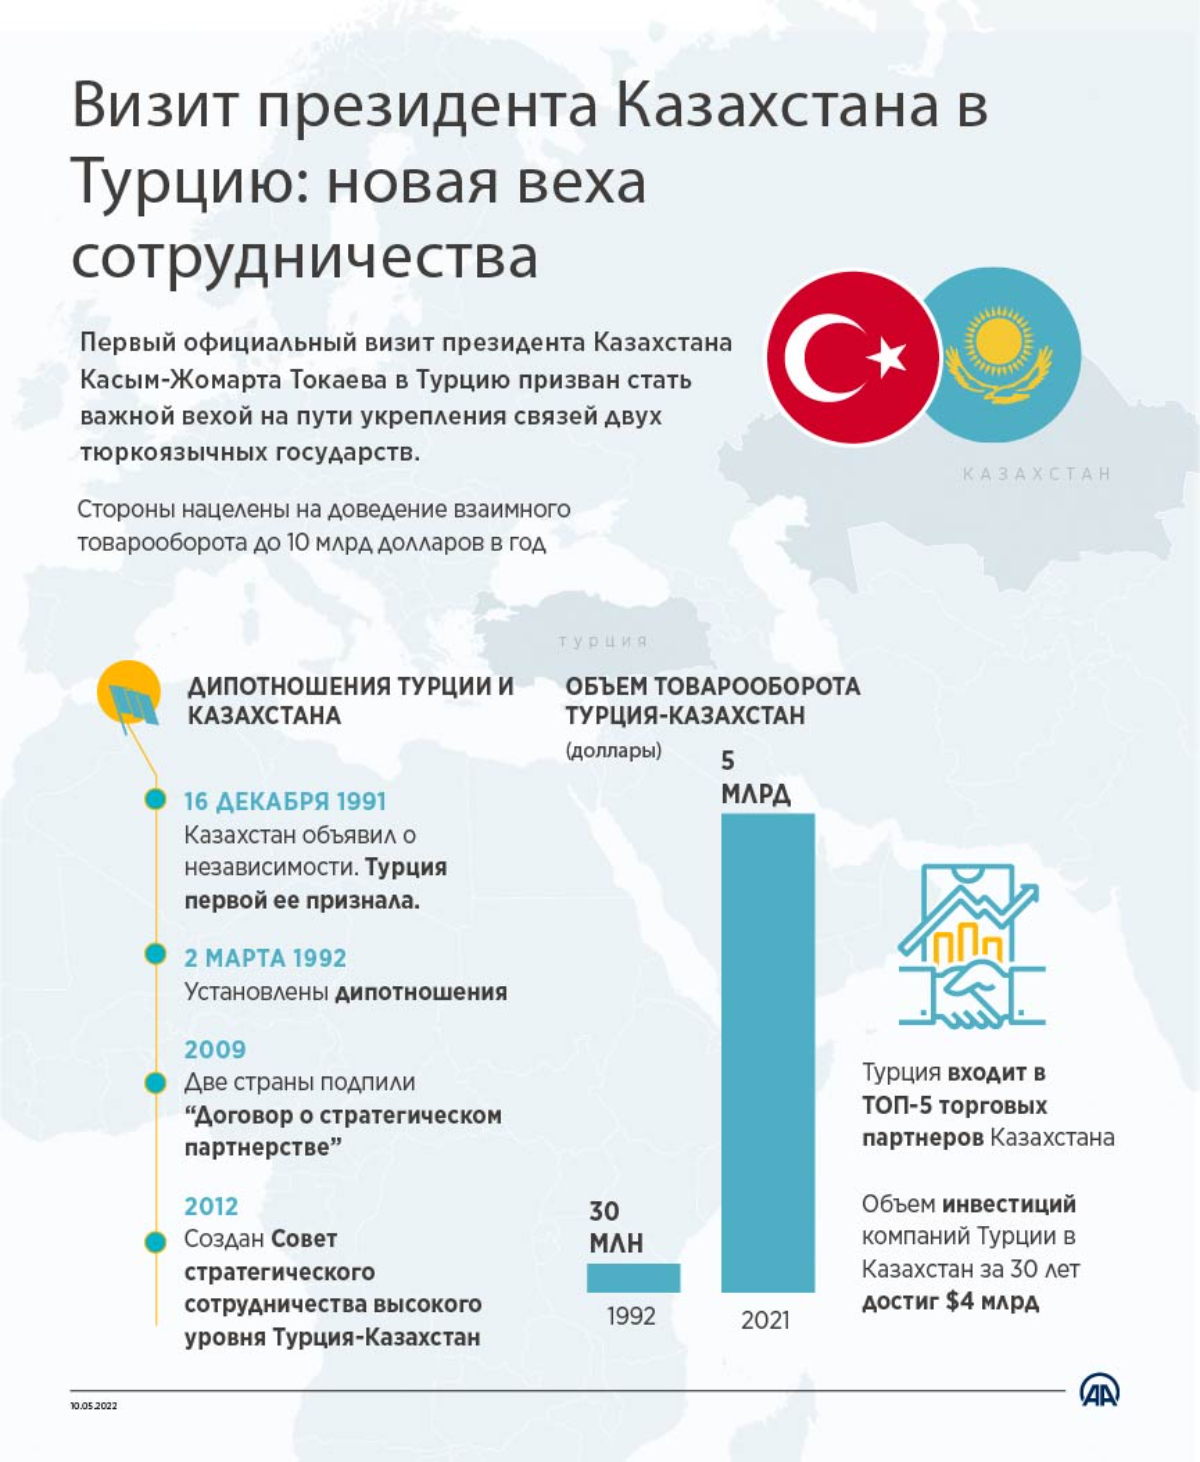 Визит президента Казахстана в Турцию: новая веха сотрудничества